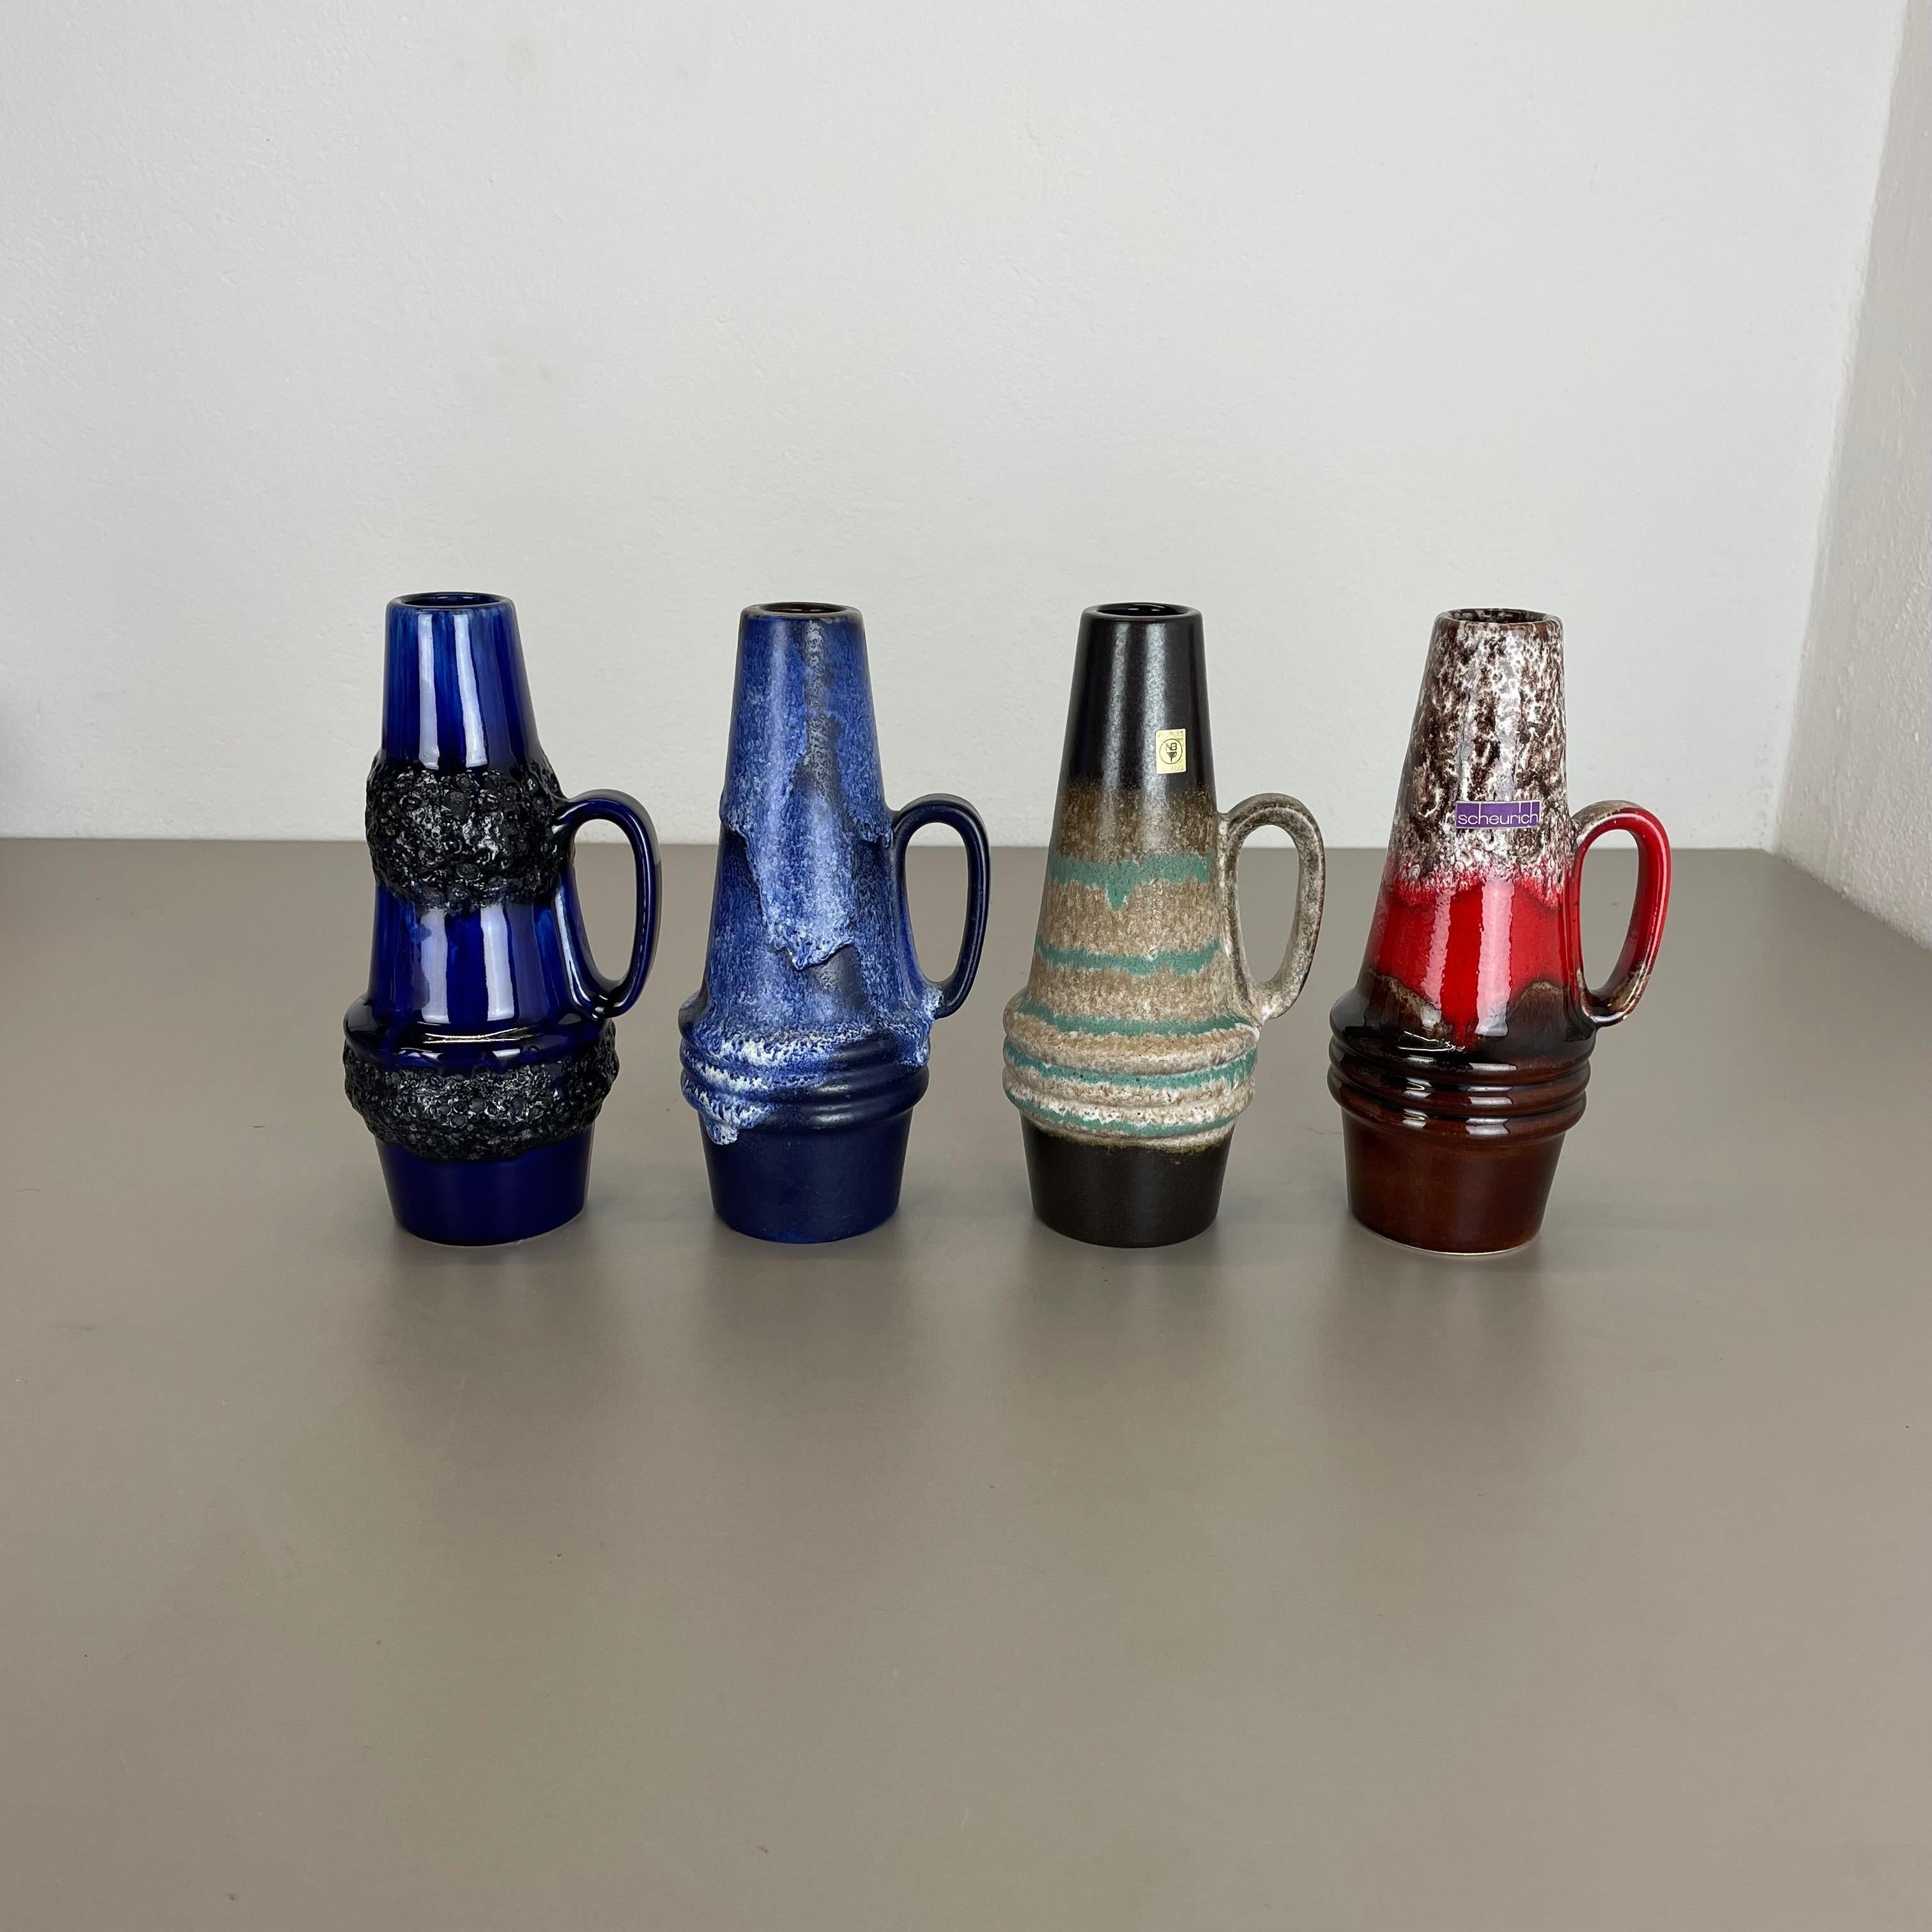 Article :

Ensemble de quatre vases d'art en lave grasse


Producteur :

Scheurich, Allemagne



Décennie :

1970s


Ces vases vintage originaux ont été produits dans les années 1970 en Allemagne. Il est réalisé en poterie céramique